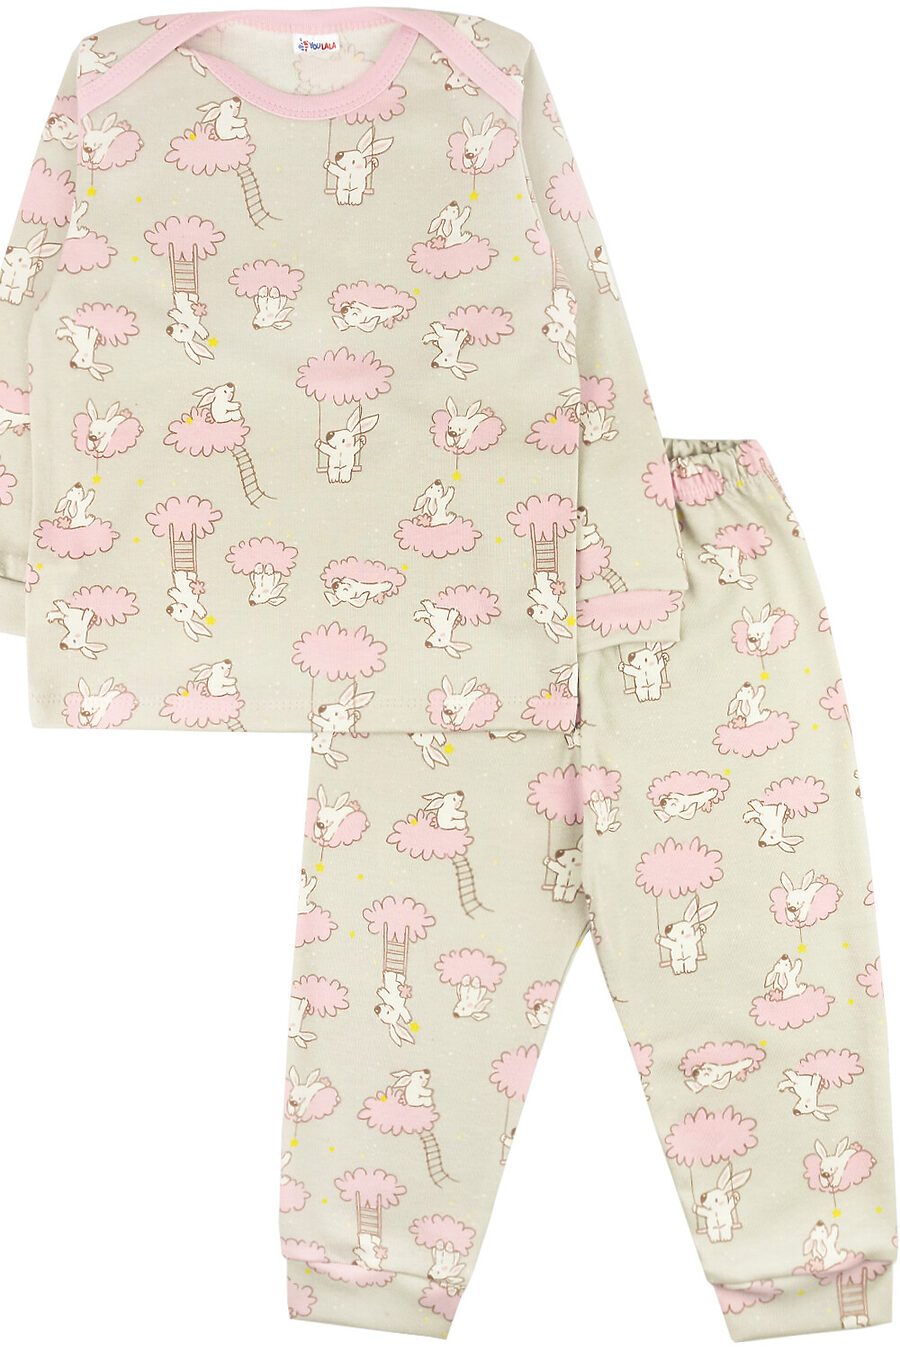 Пижама (брюки+джемпер) YOULALA (721276), купить в Moyo.moda